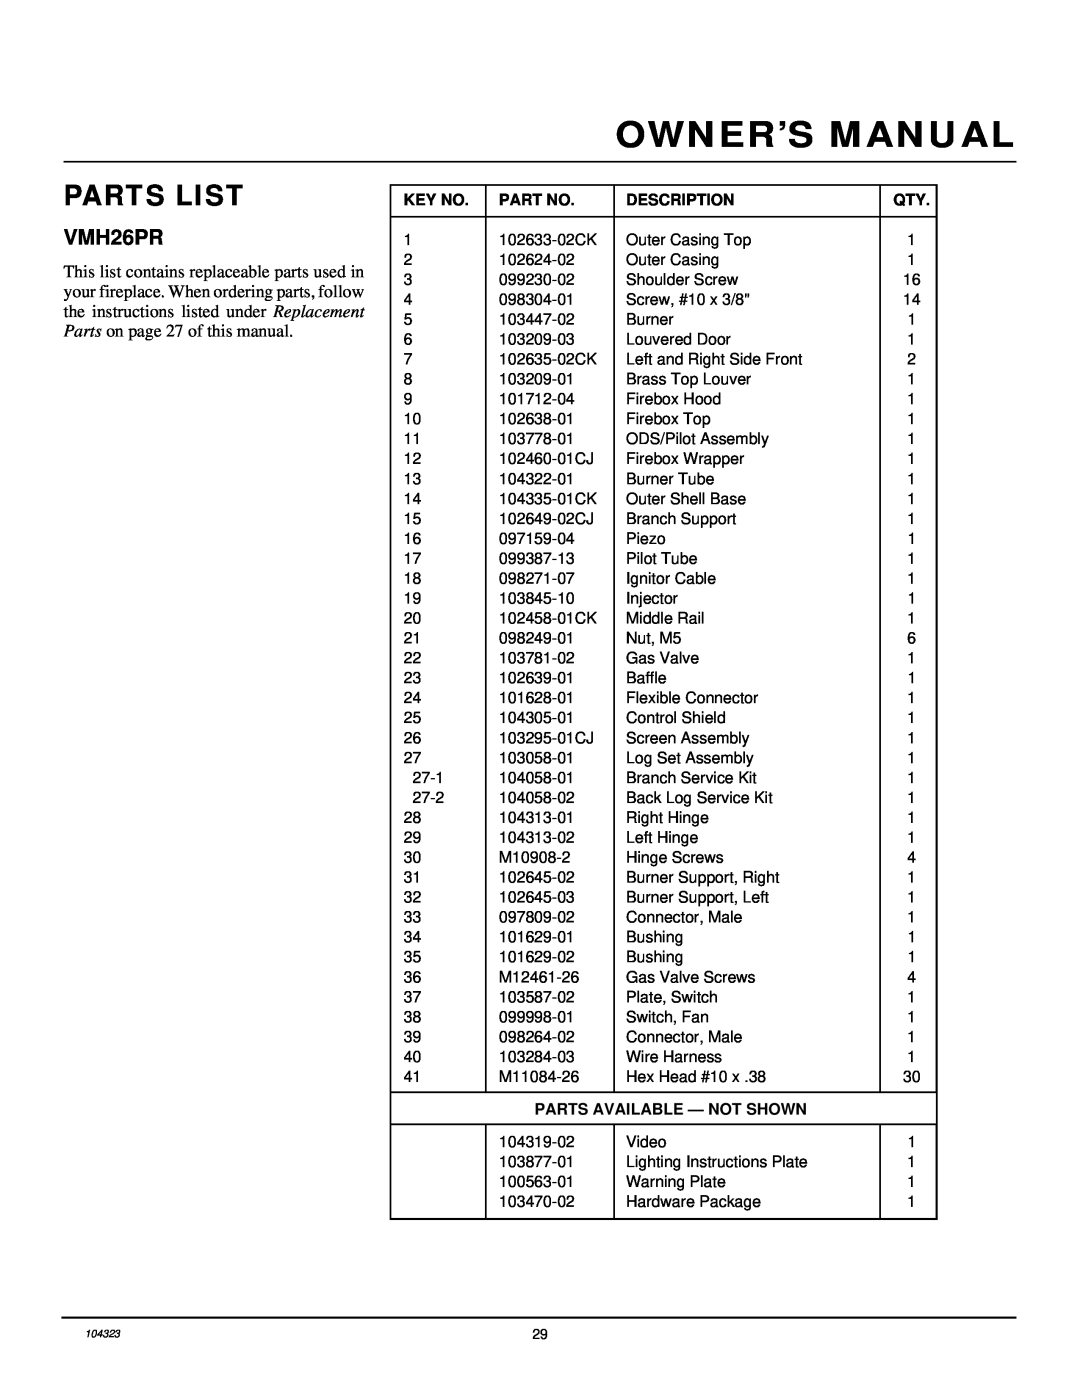 Desa VMH26PR installation manual Parts List, Description, Parts Available - Not Shown 